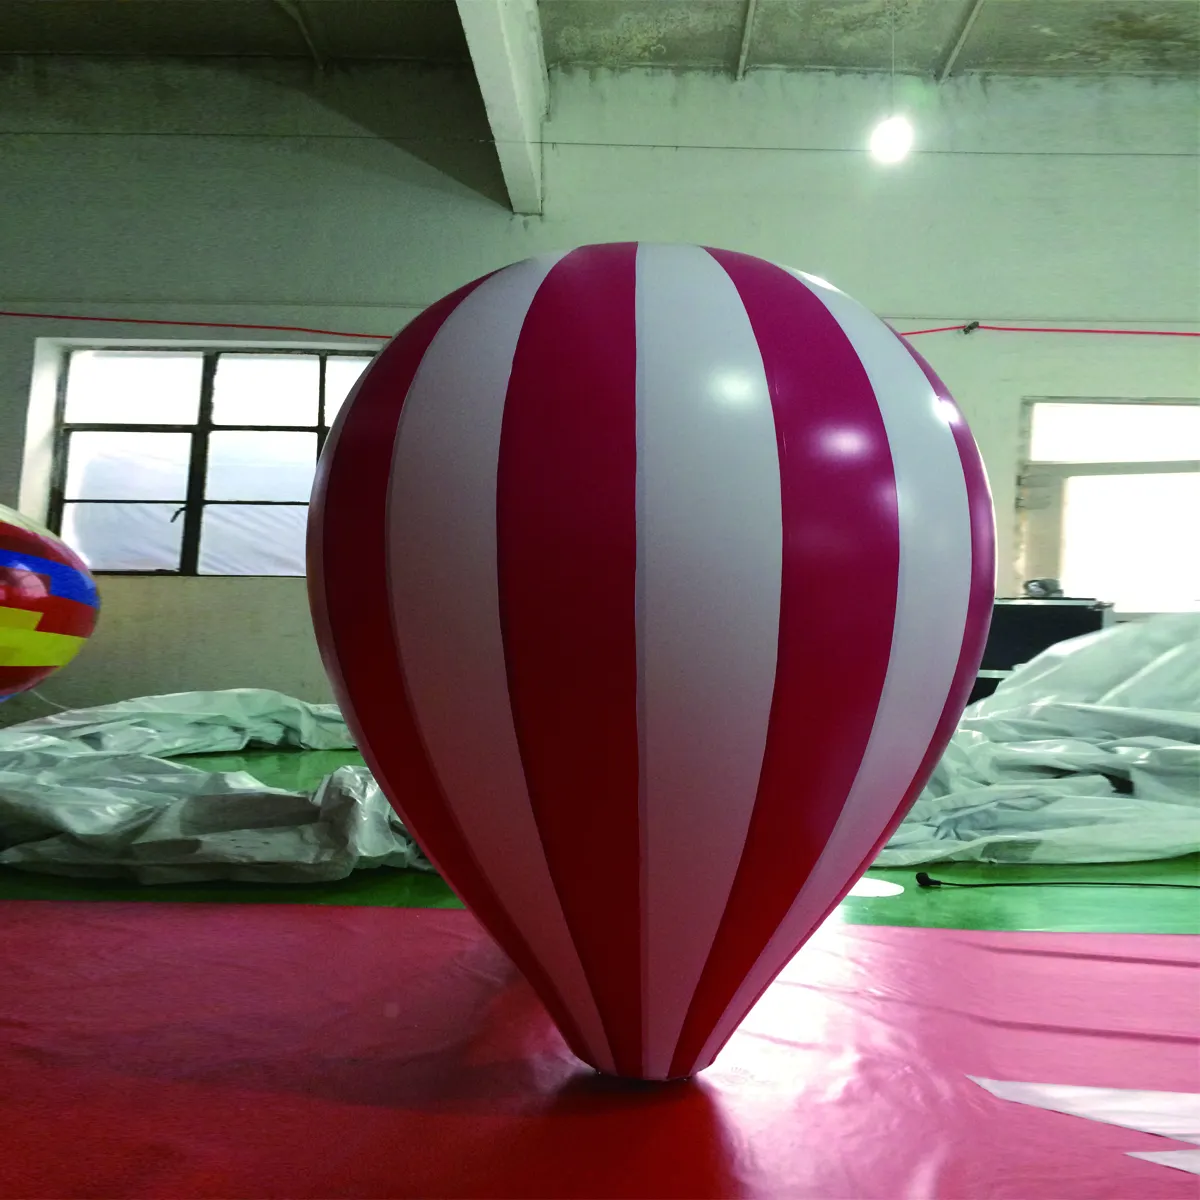 उच्च गुणवत्ता वाले इन्फ्लैटेबल विज्ञापन हीलियम गुब्बारे के साथ विशाल हीलियम इन्फ्लैटेबल पीवीसी गुब्बारा